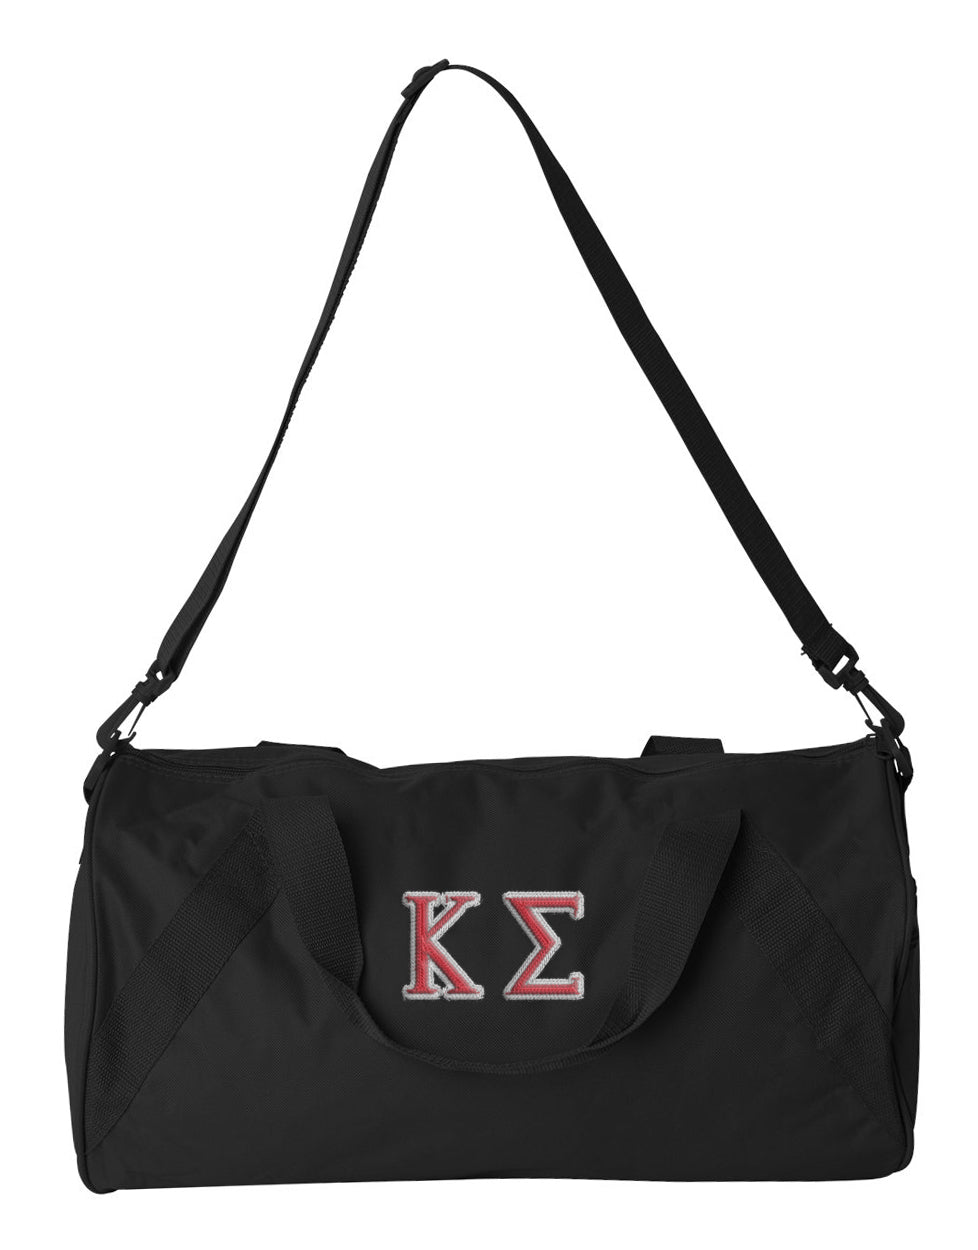 Kappa Sigma Embroidered Duffel Bag